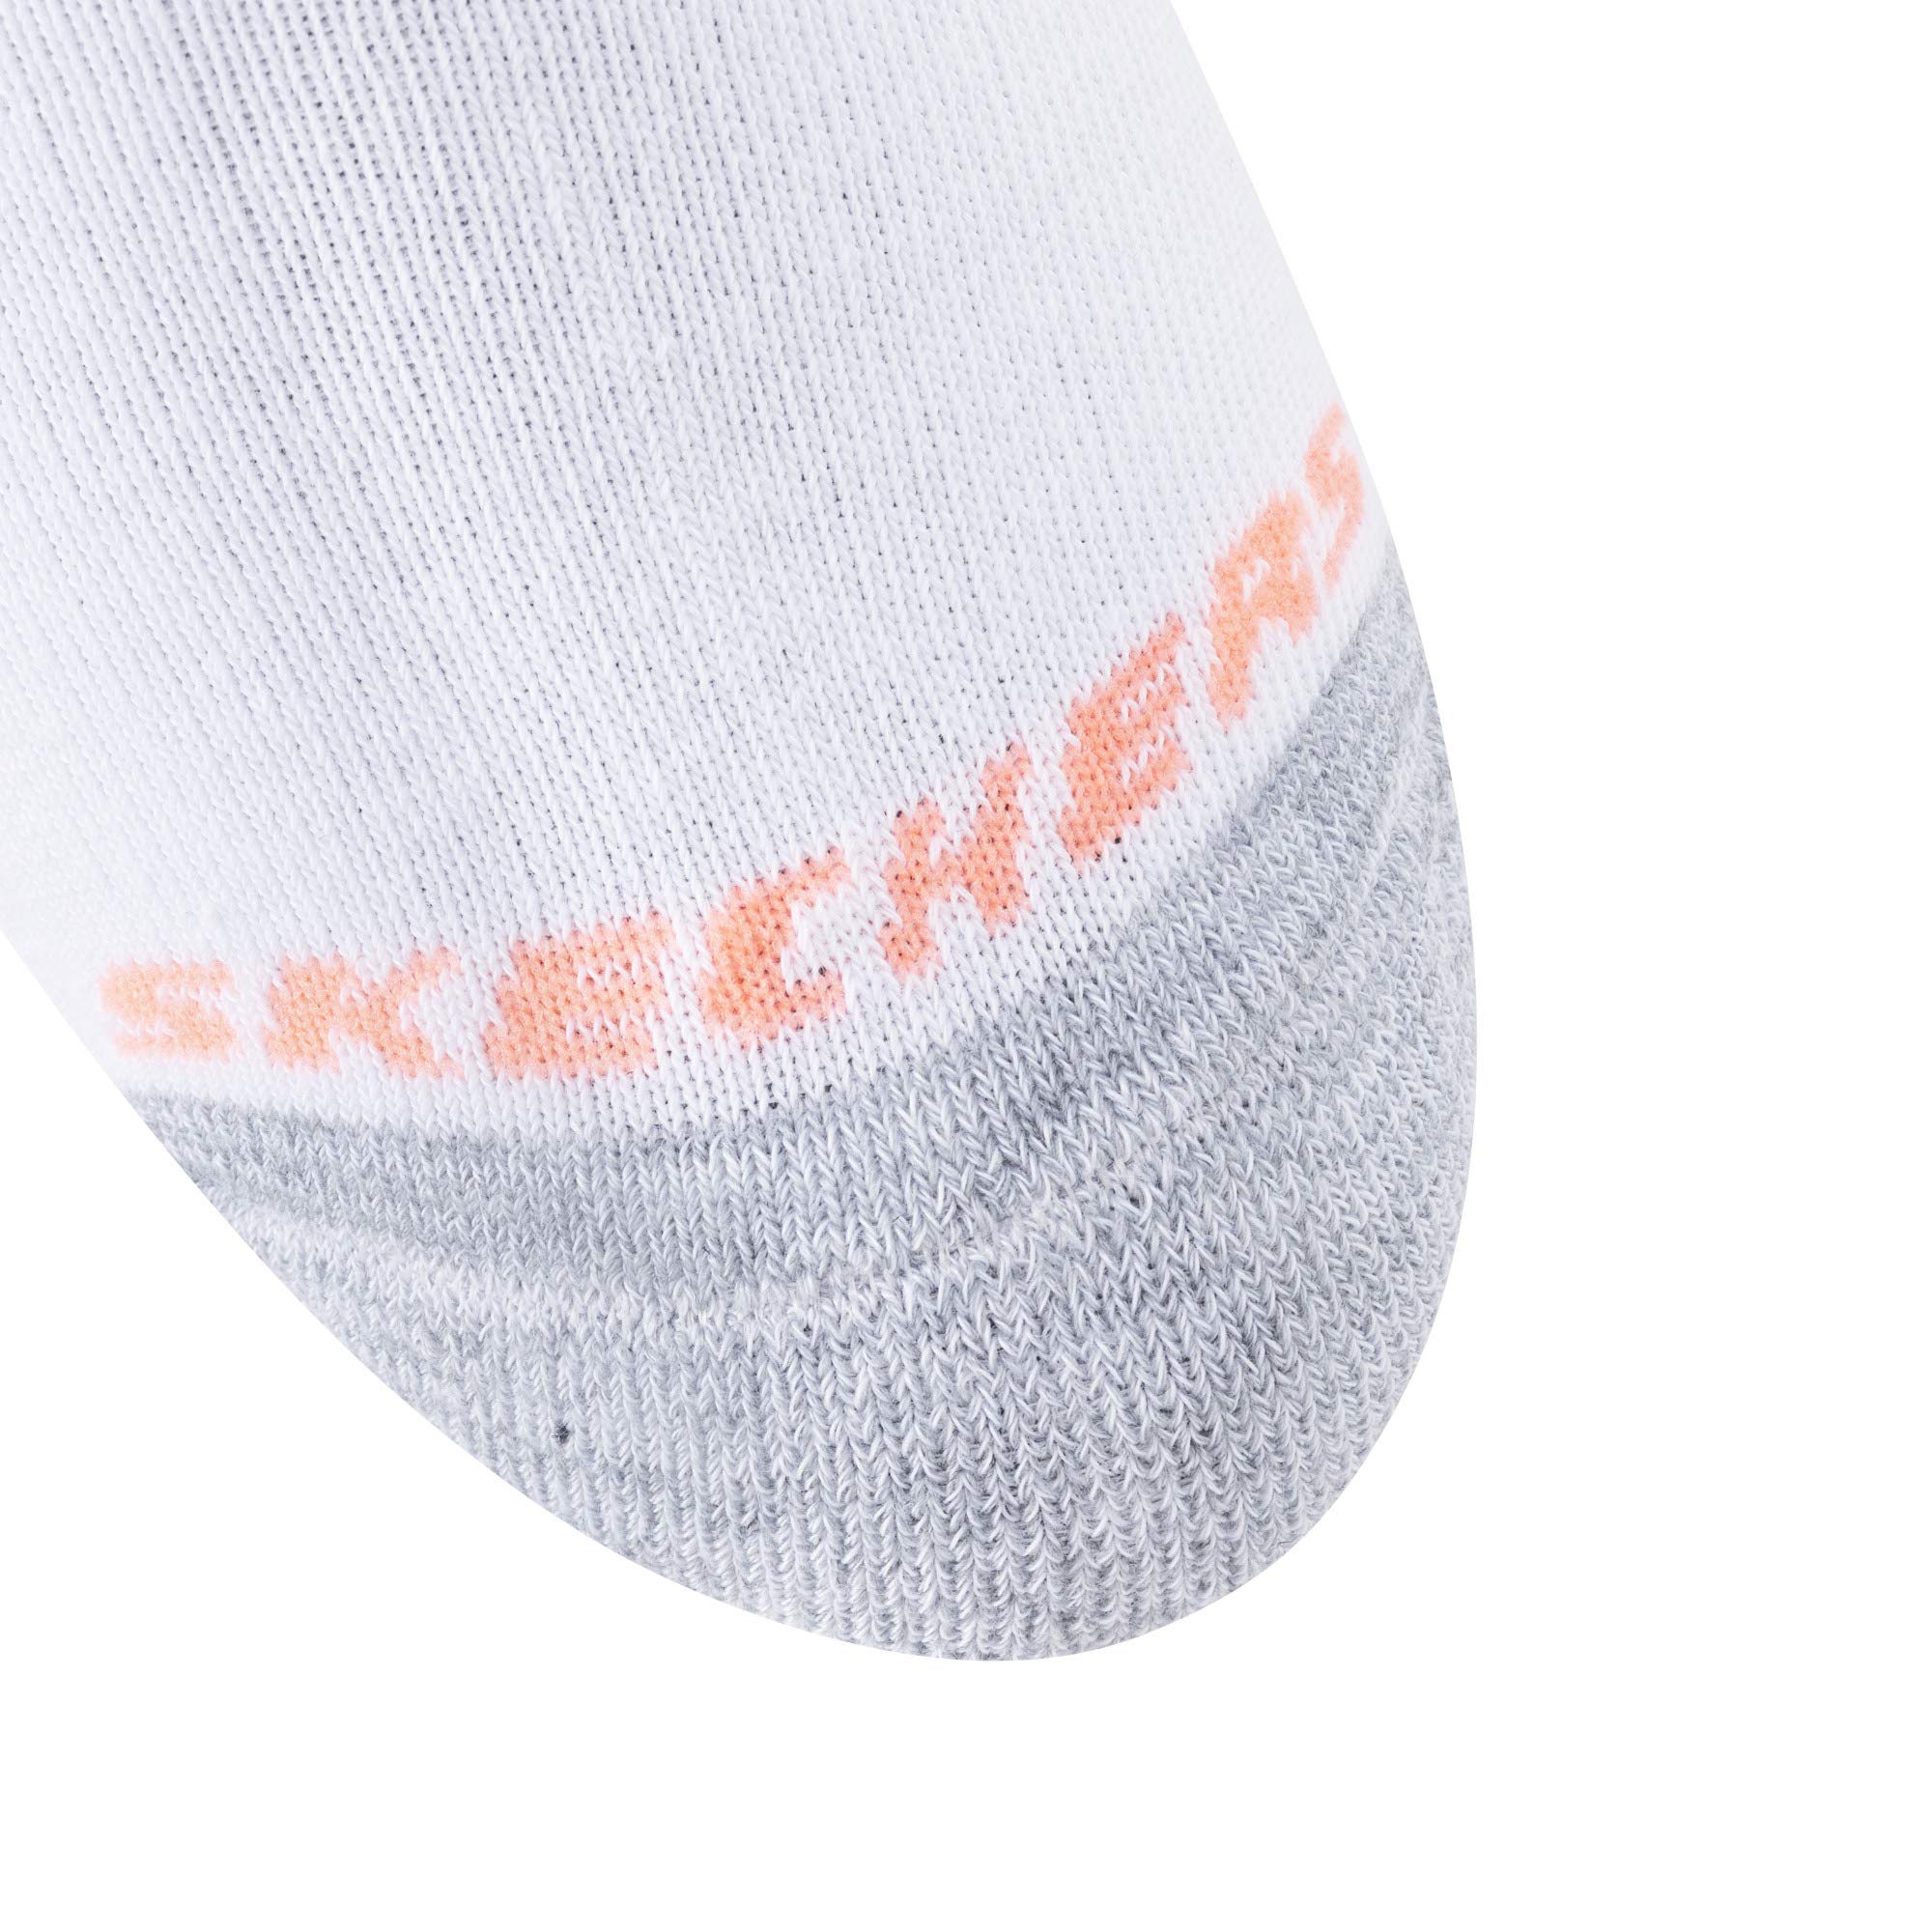 Skechers womens 10 Pack No Show Running Socks, White/Orange, 9 11 US